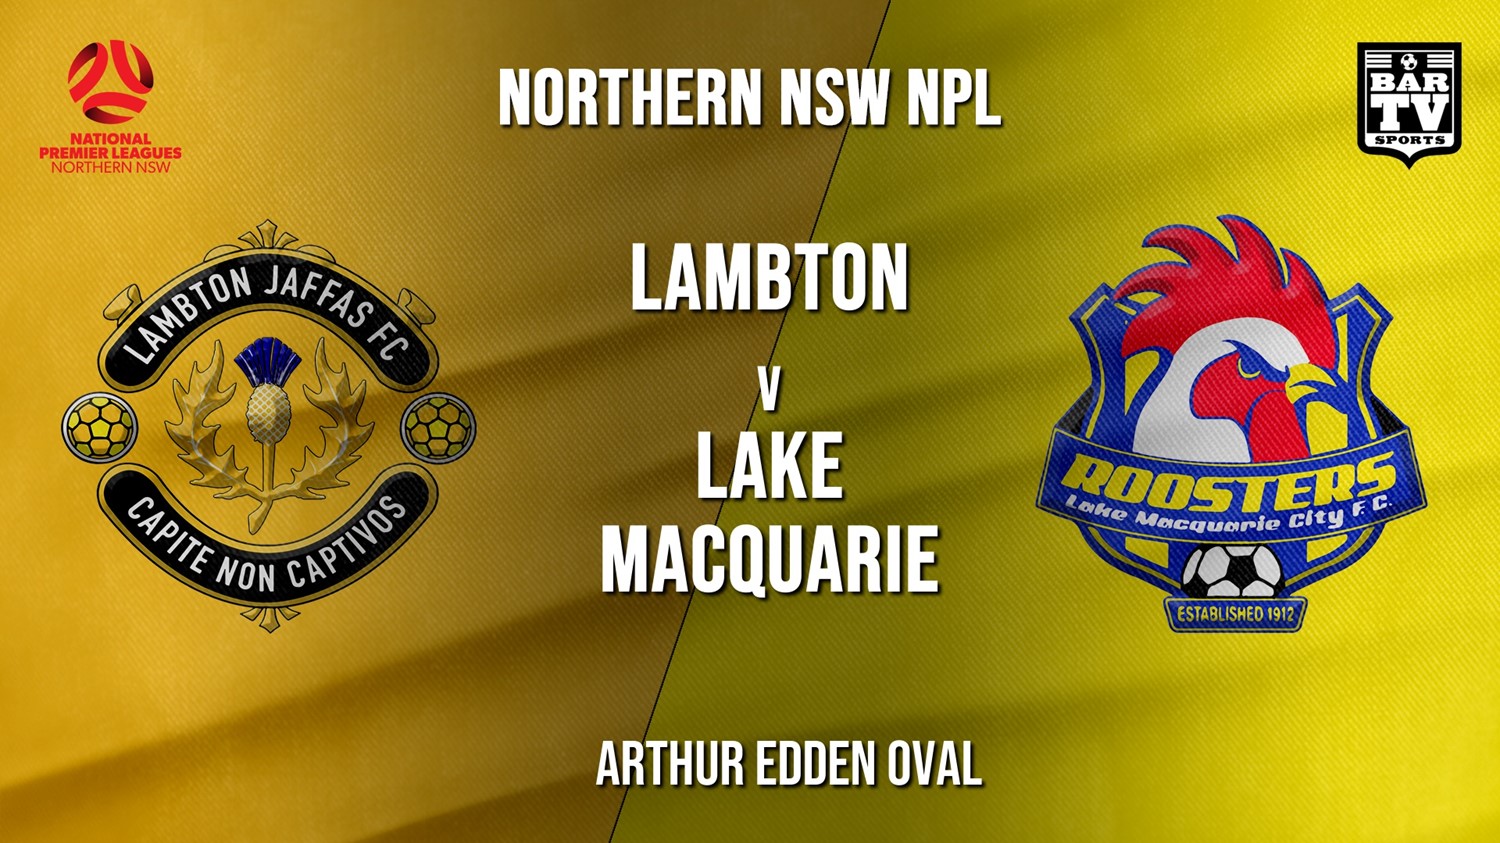 NPL - NNSW Lambton Jaffas FC v Lake Macquarie City FC Minigame Slate Image